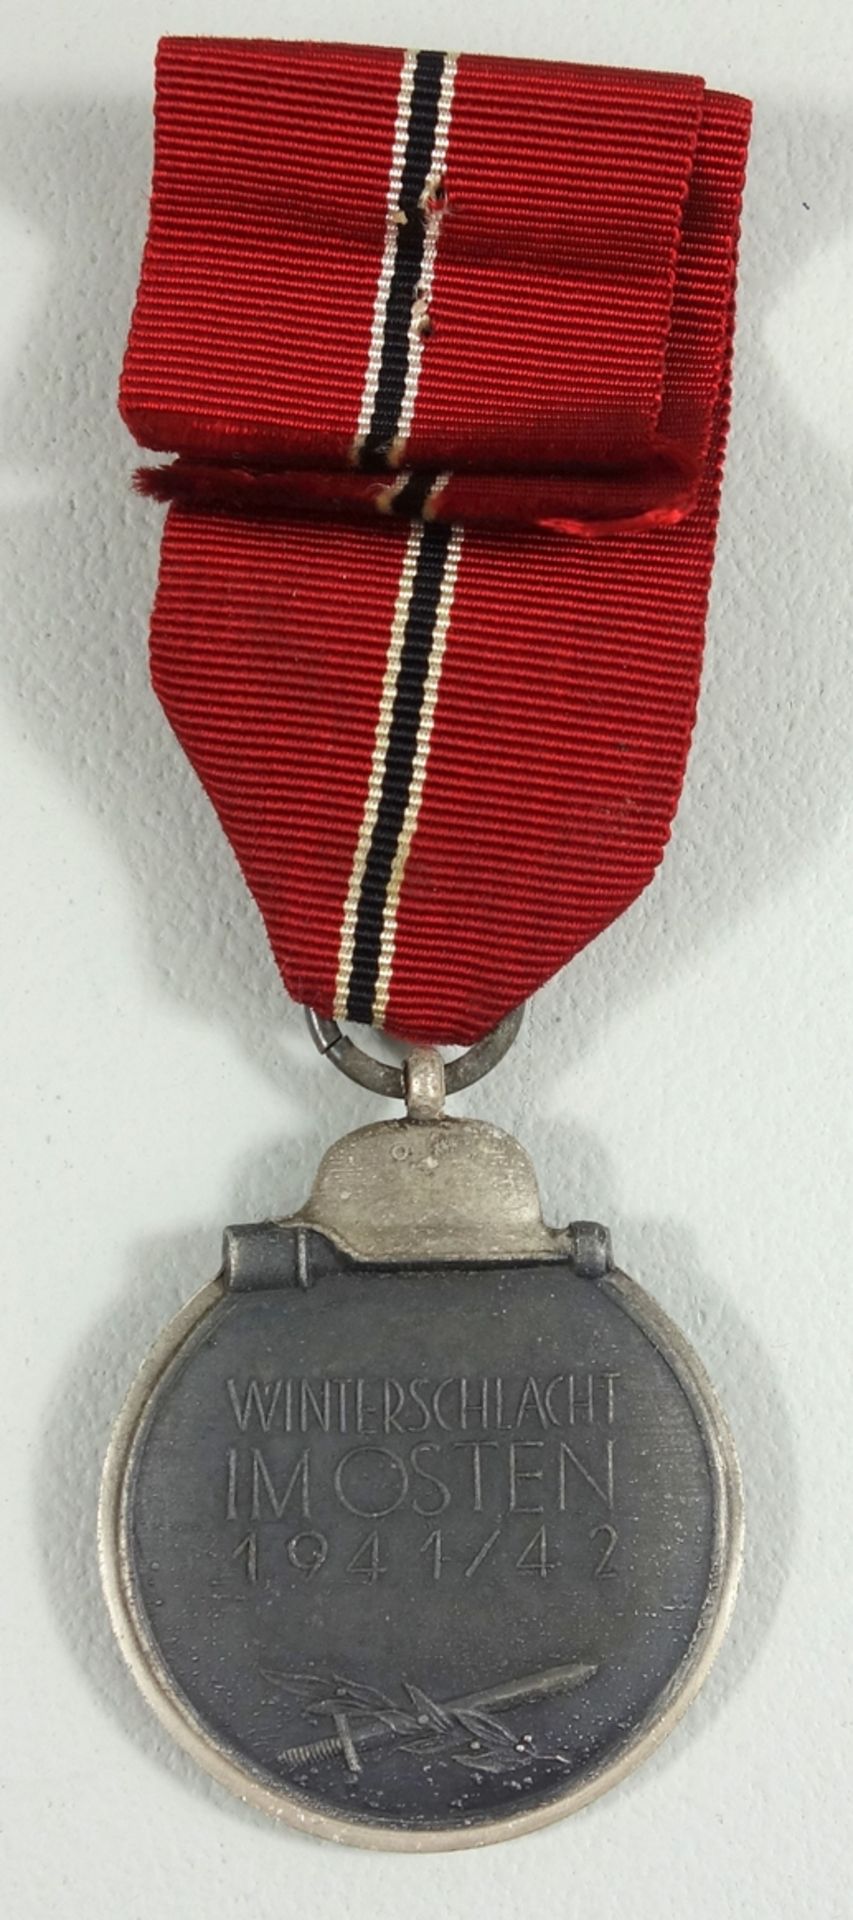 Winterschlacht im Osten 1941/42, Medaille am Band, Zink, mit versilbertem Rand - Bild 2 aus 2